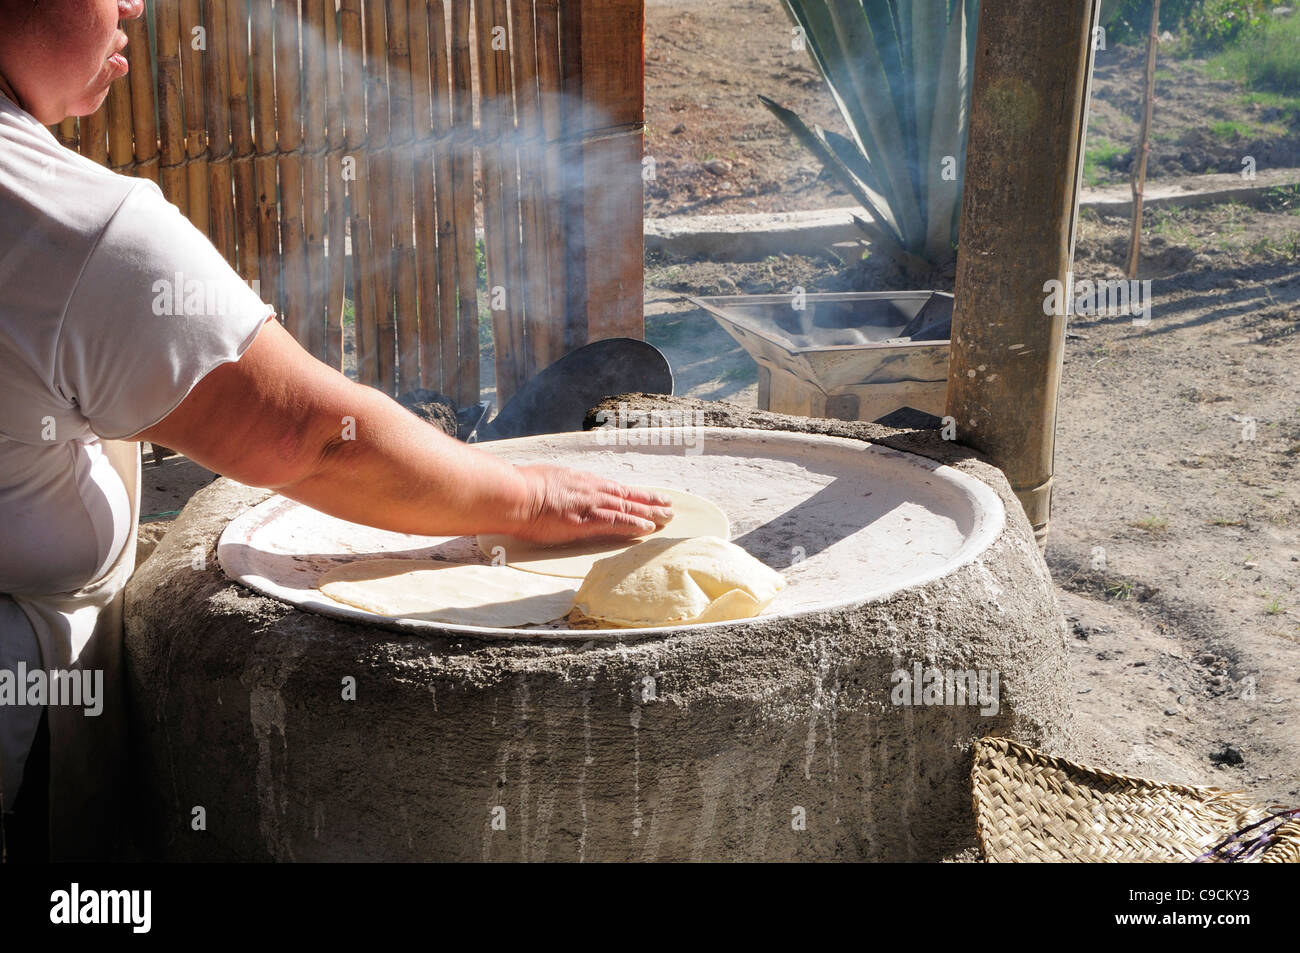 https://c8.alamy.com/compes/c9cky3/mexico-oaxaca-mujer-hacer-tortillas-fuera-de-comal-tradicional-comal-c9cky3.jpg